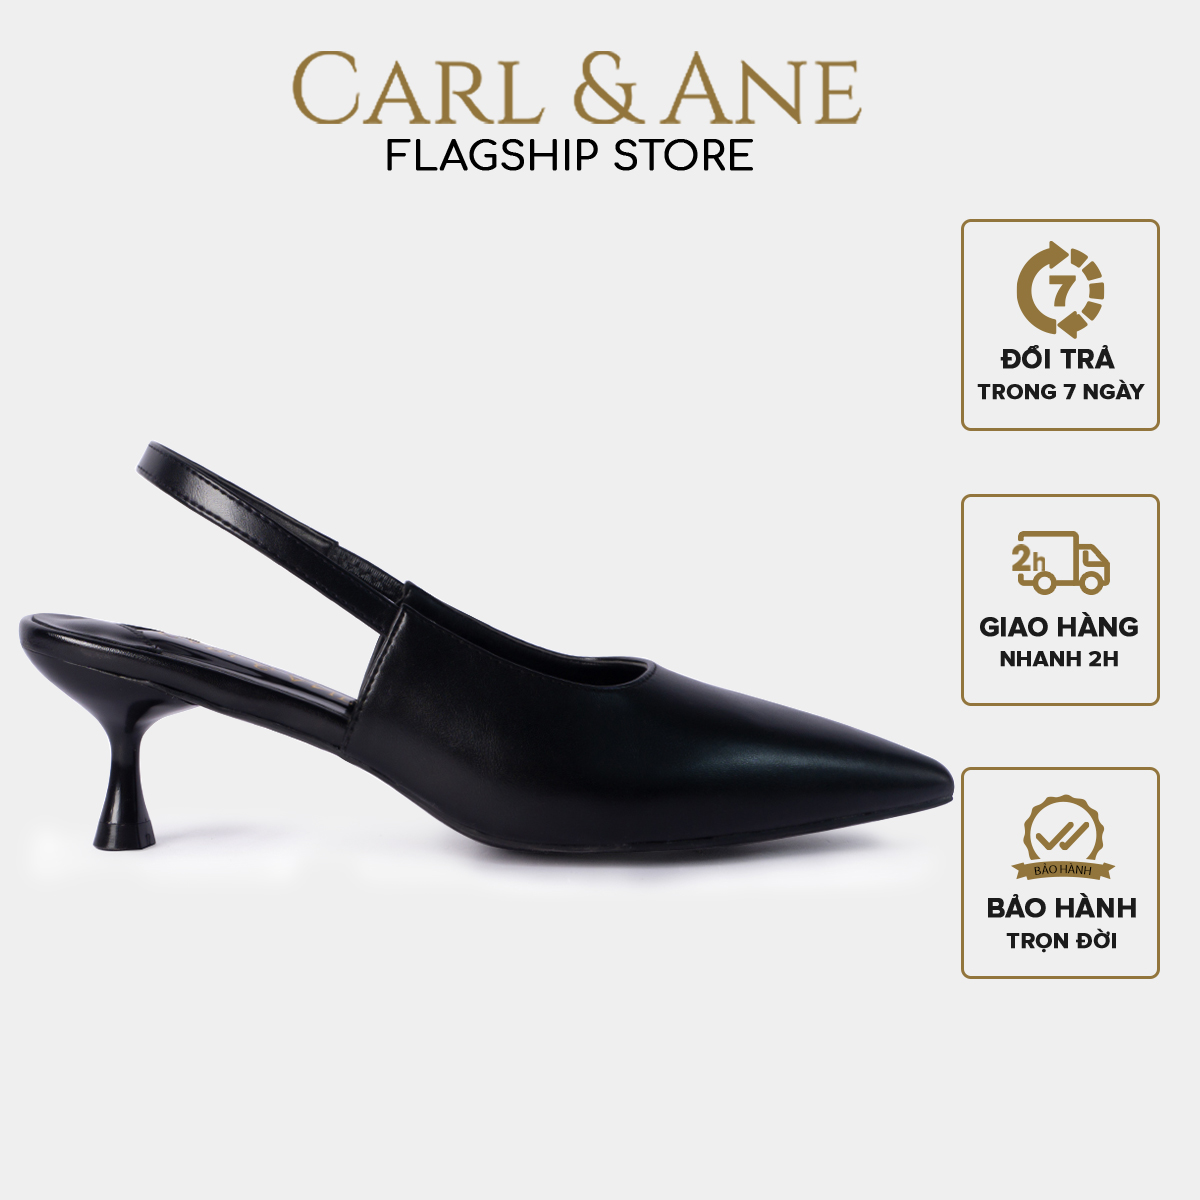 Carl & Ane - Giày cao gót mũi nhọn dáng công sở phong cách Hàn Quốc cao 5cm màu đen - CL013